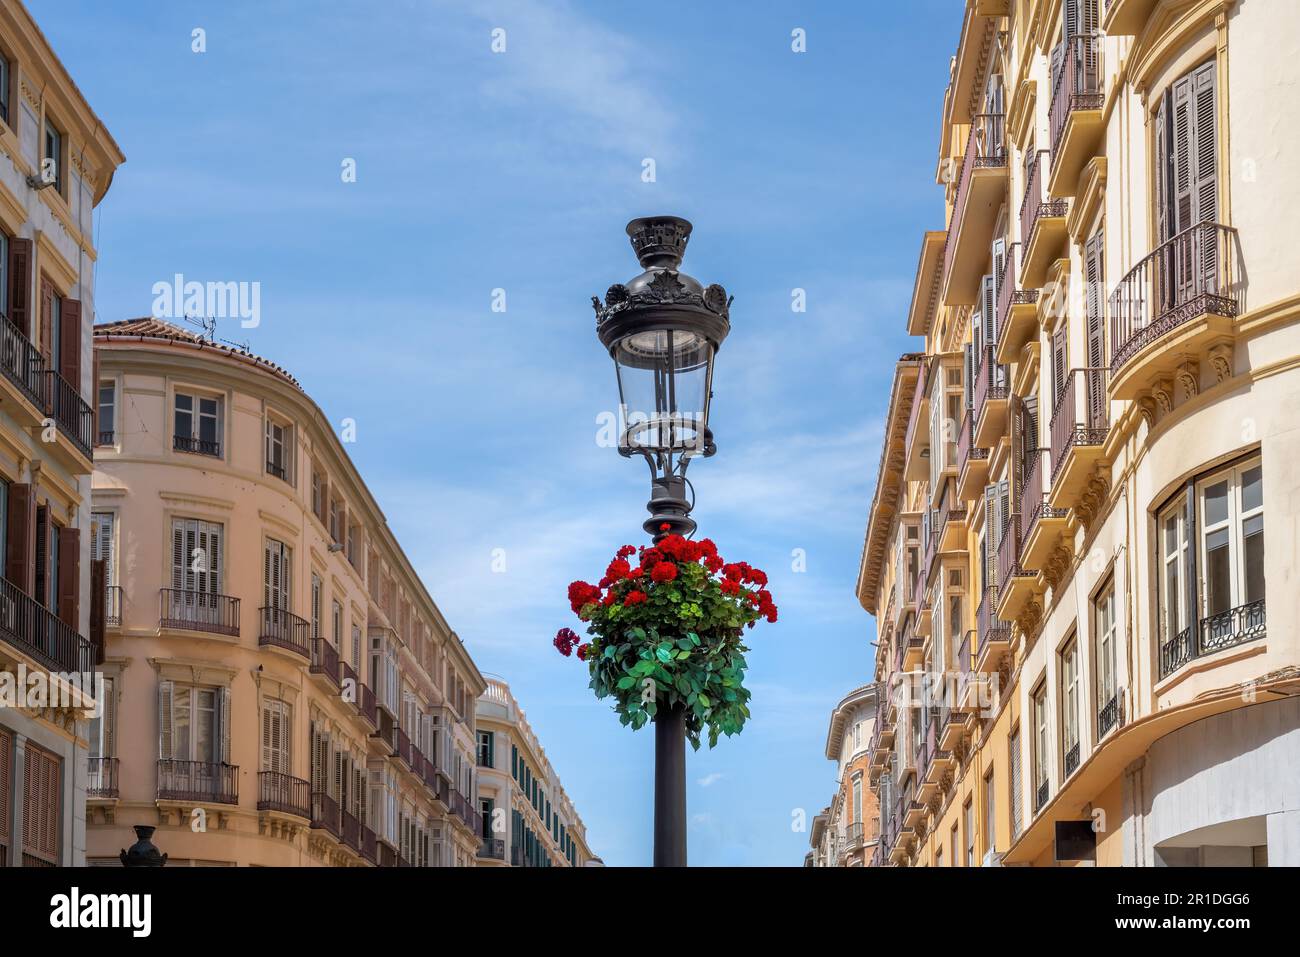 Lampadaire avec fleurs à Calle Larios - célèbre rue piétonne et commerçante - Malaga, Andalousie, Espagne Banque D'Images